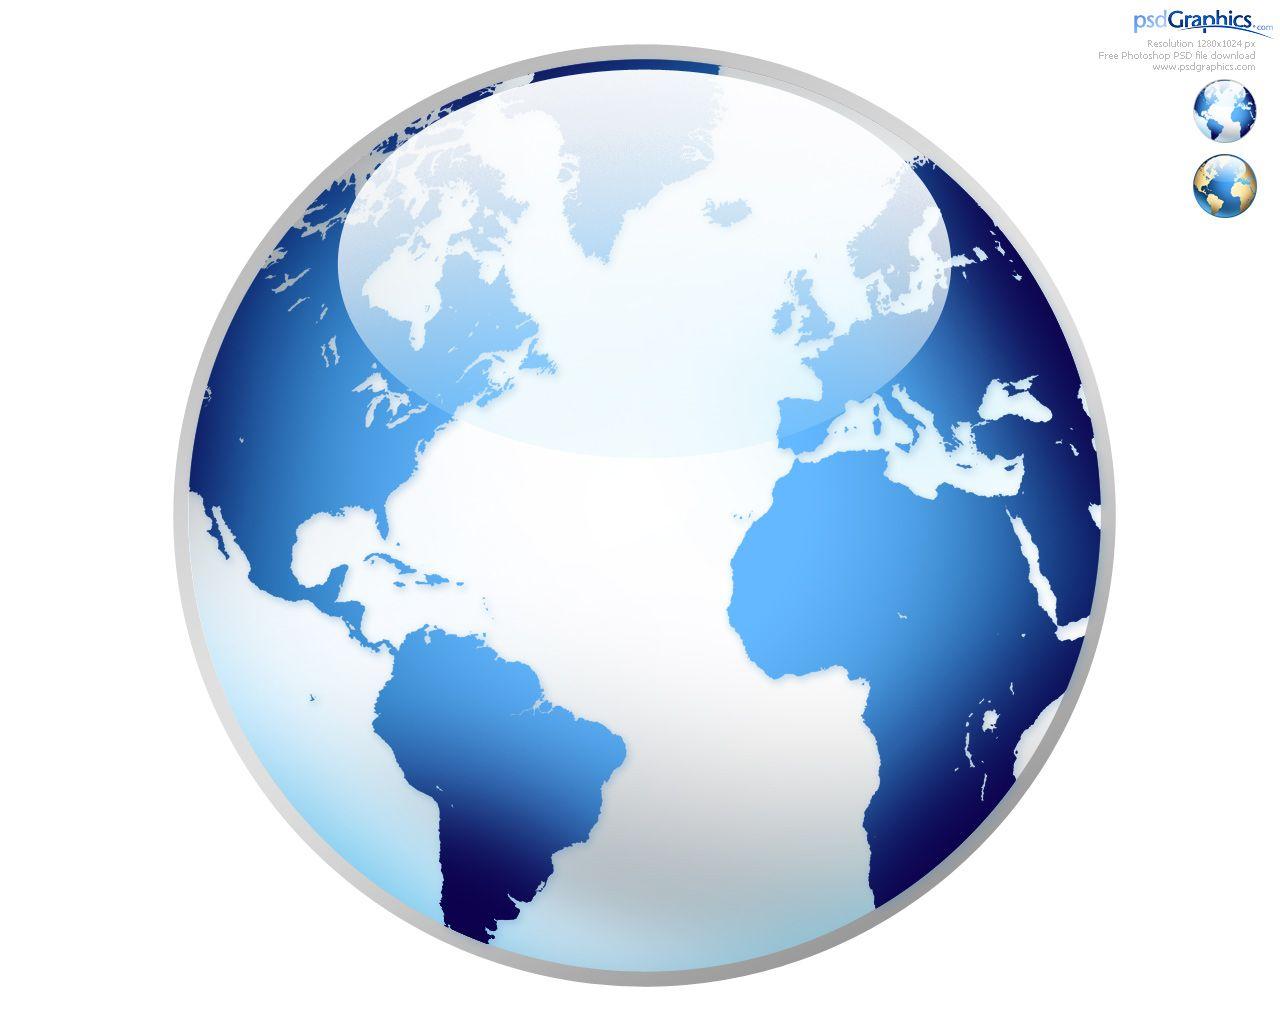 Shiny Globe Logo - Photoshop world globe icon